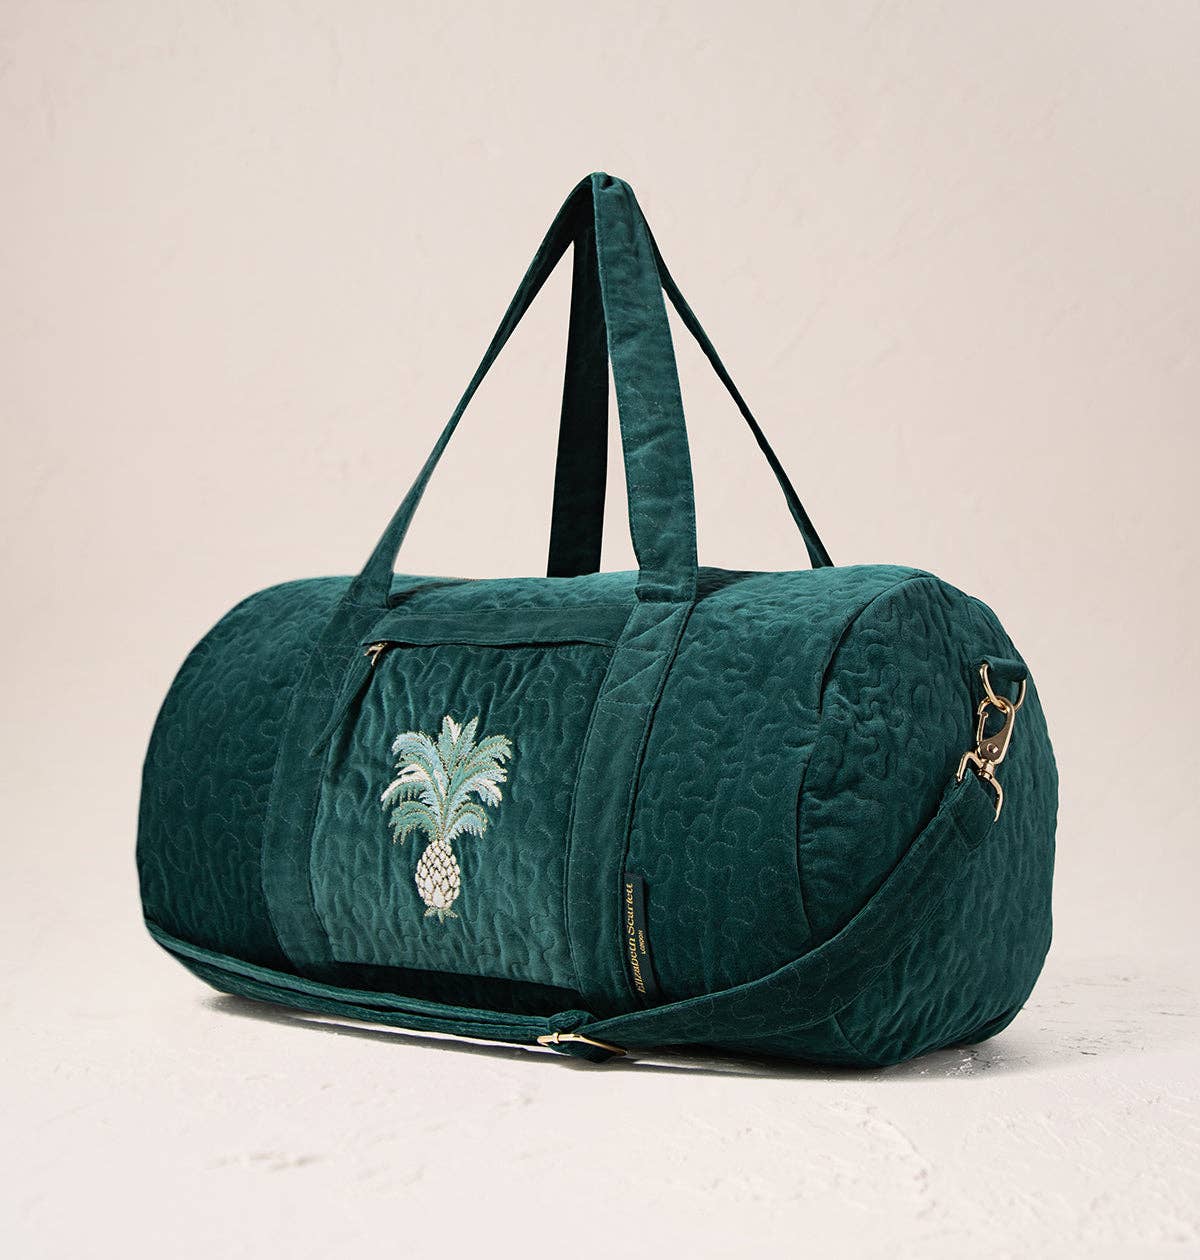 Elizabeth Scarlett Ltd - Pineapples Overnight Bag